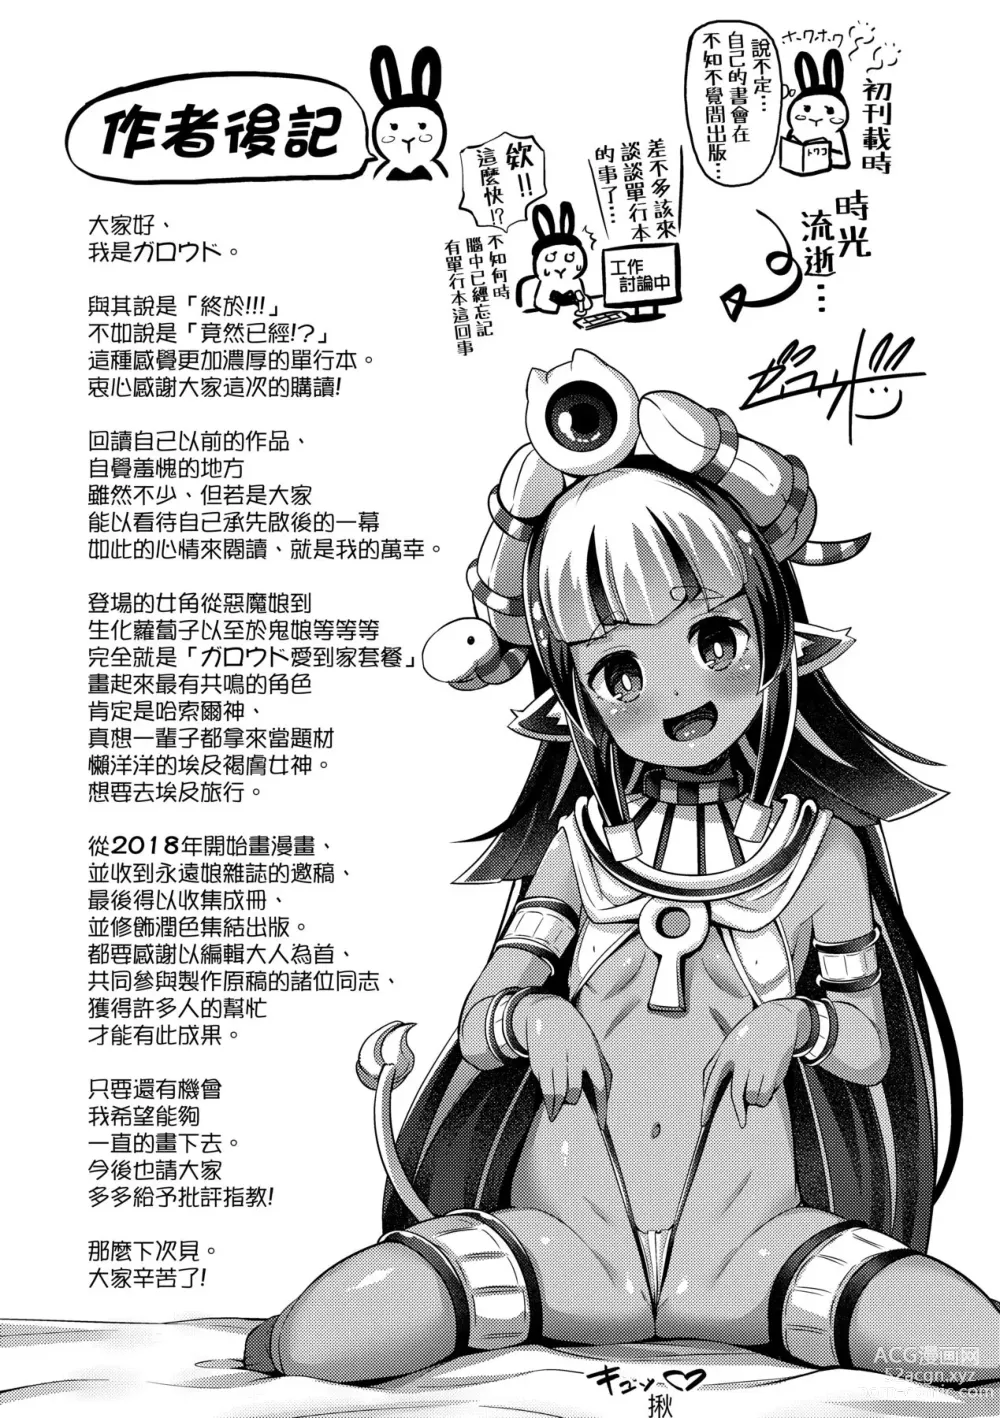 Page 180 of manga Kashi Oni Kochira (decensored)